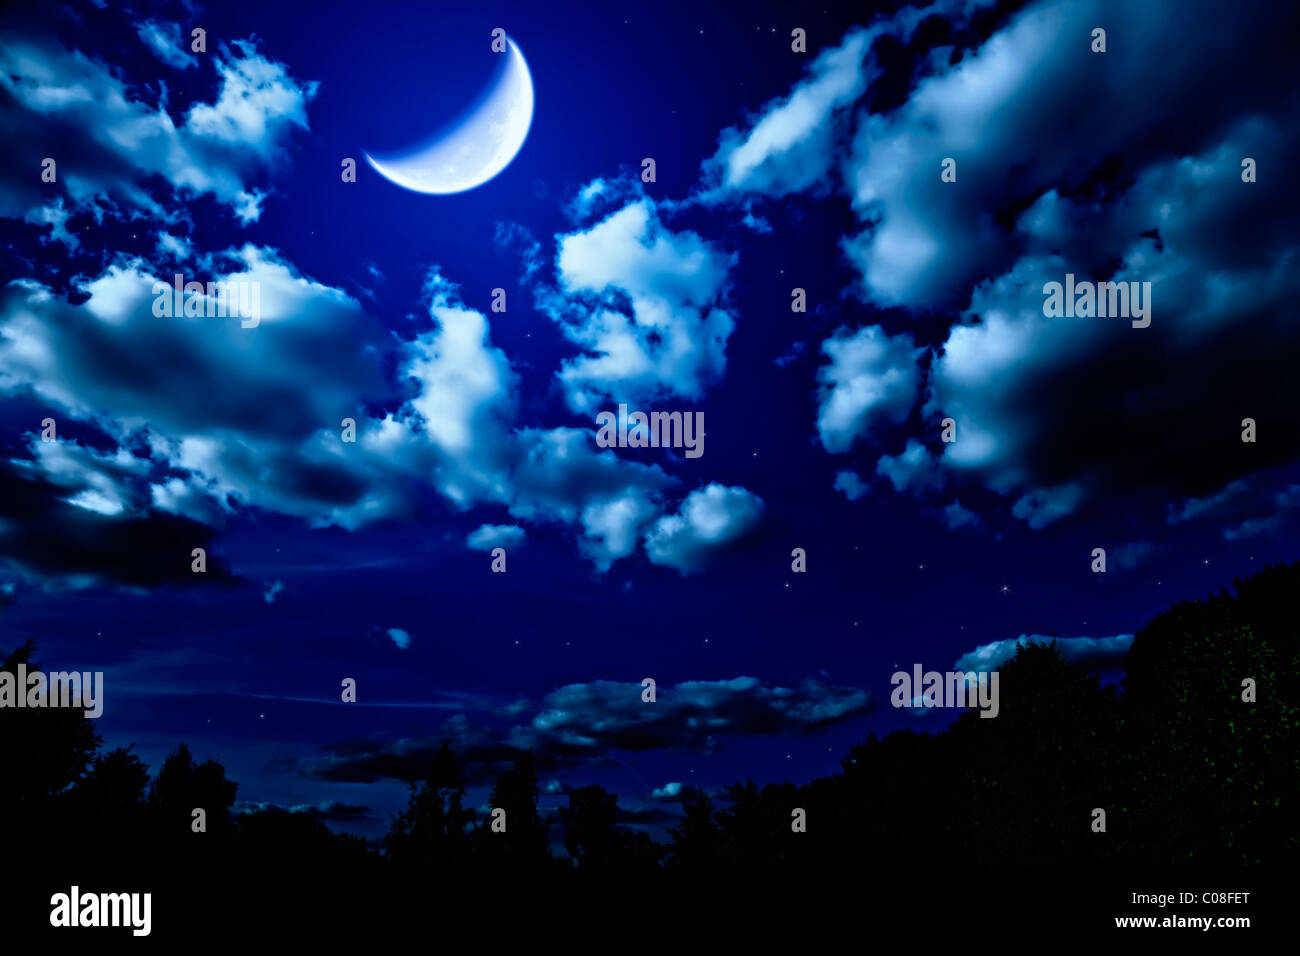 Paesaggio con night summer foresta con alberi verdi e grande e luminosa luna nel cielo scuro con nuvole e stelle Foto Stock